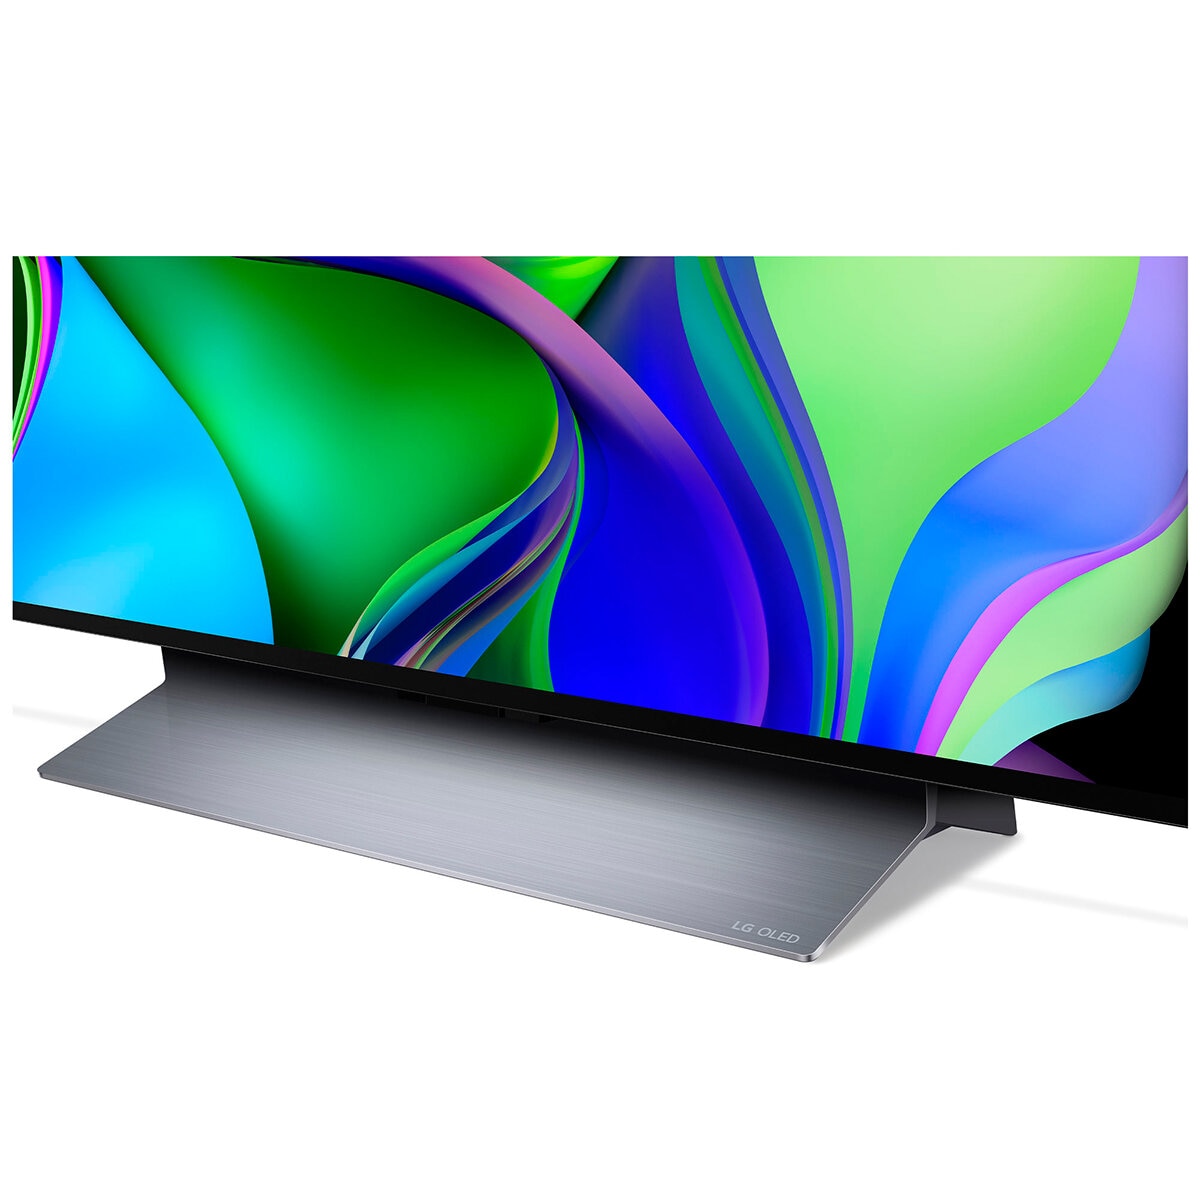 Esta smart TV LG OLED ahora tiene 900€ de descuento